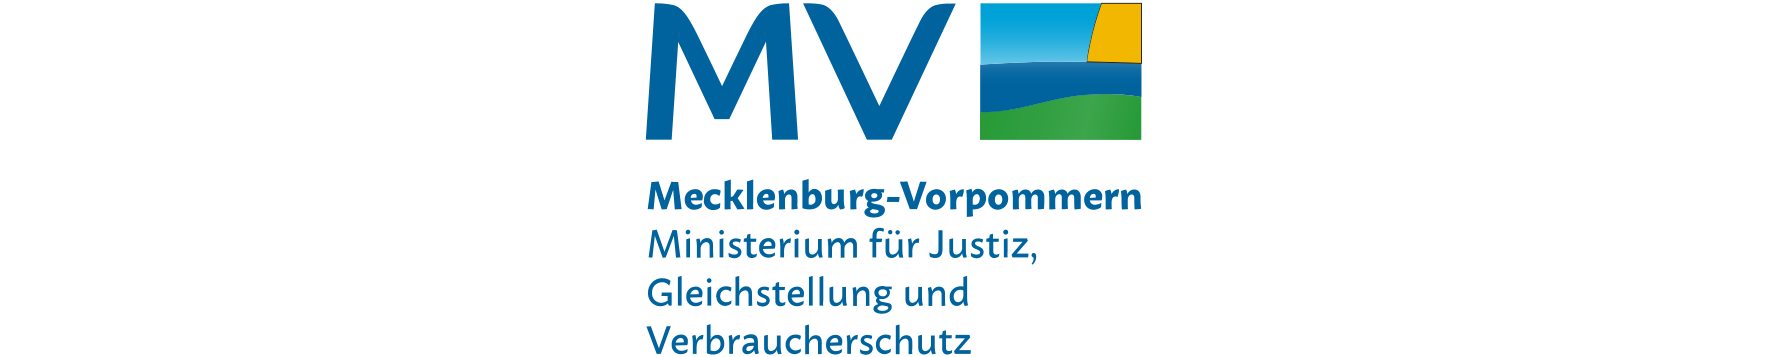 Mecklenburg-Vorpommern Ministerium für Justiz, Gleichstellung und Verbraucherschutz